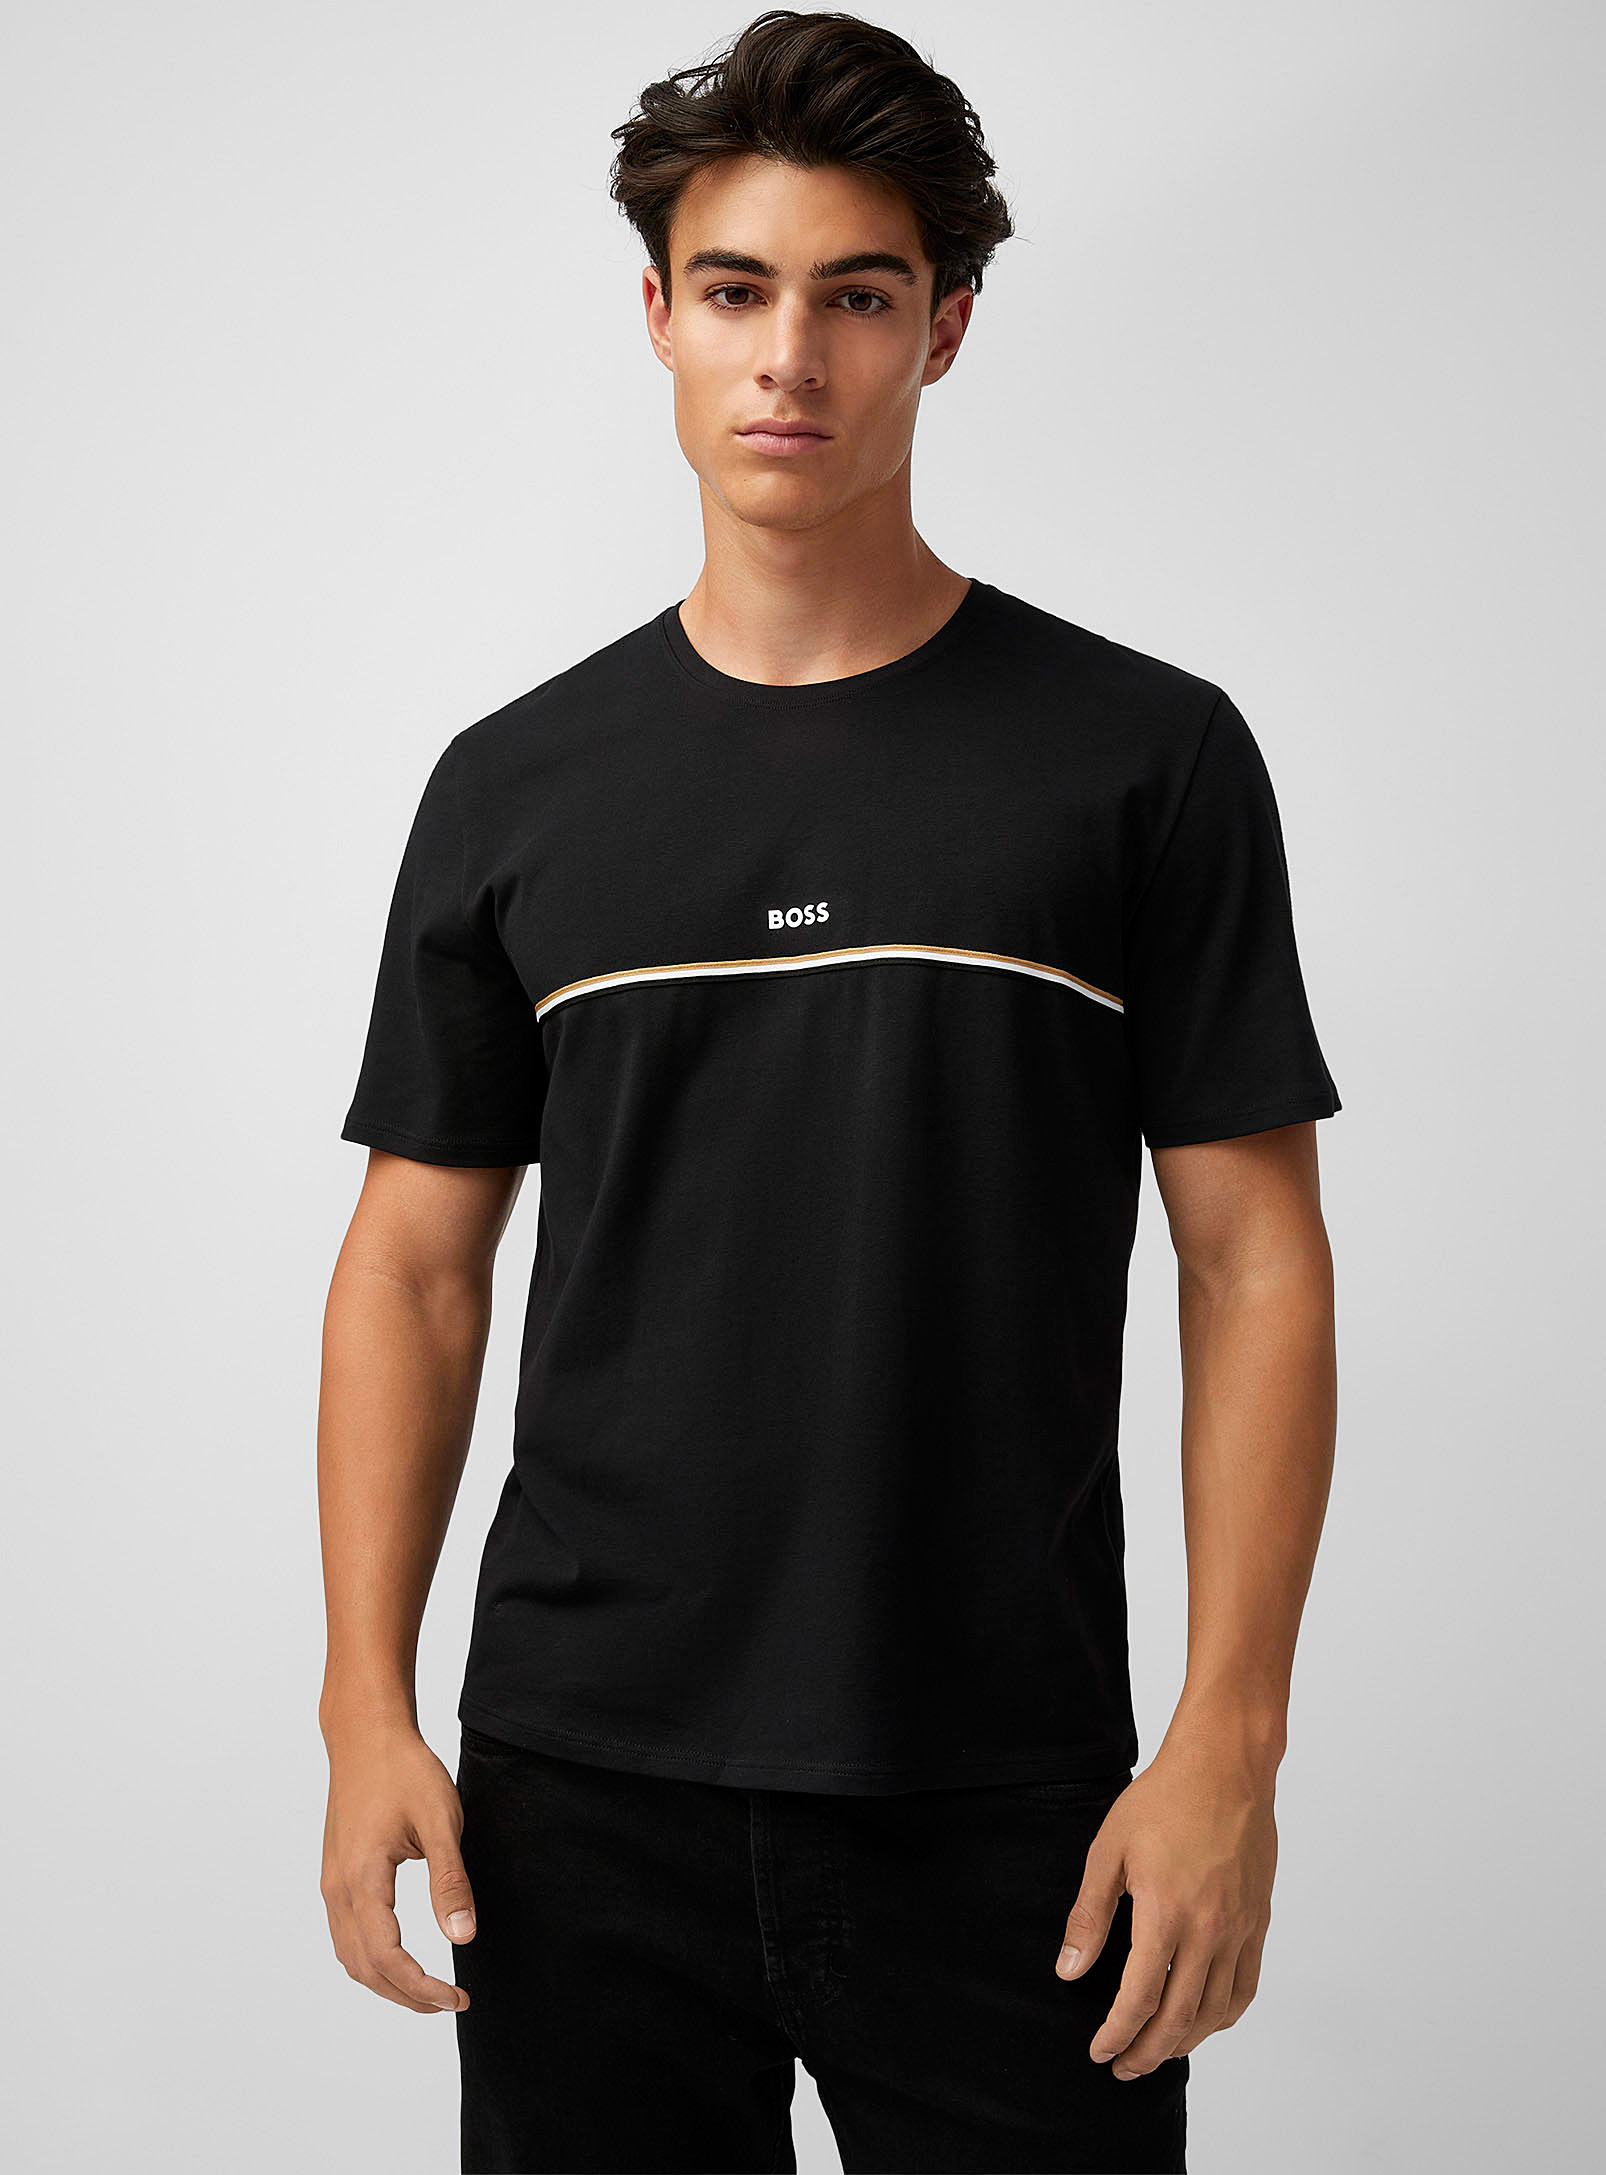 BOSS - Le t-shirt détente logo bande tricolore